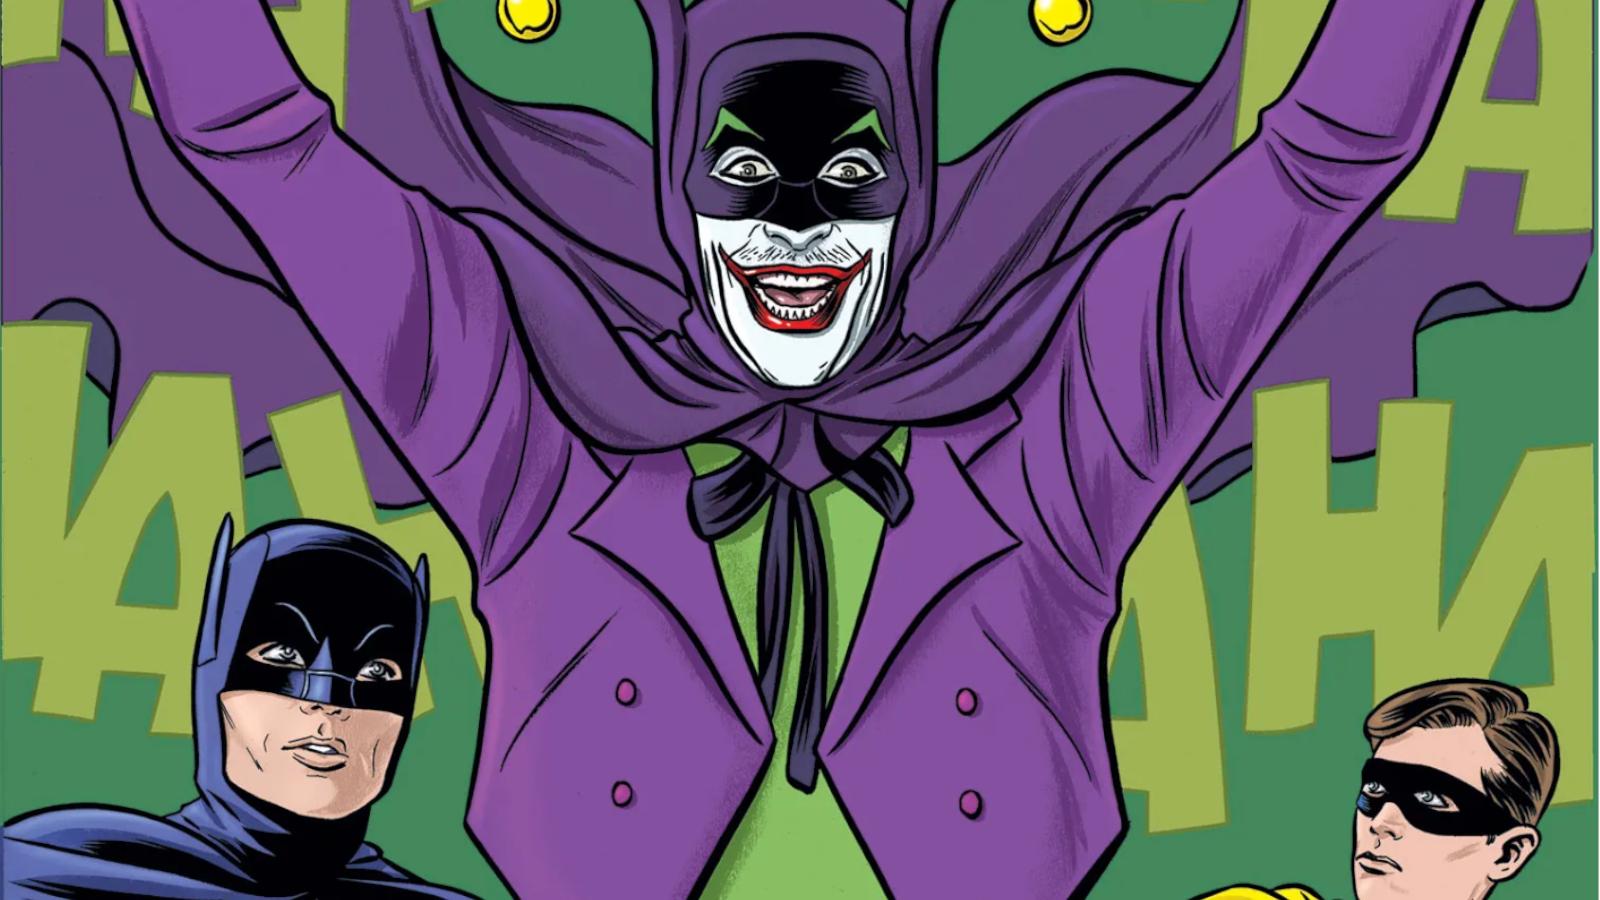 The Joker as he appears in Batman '66 comic